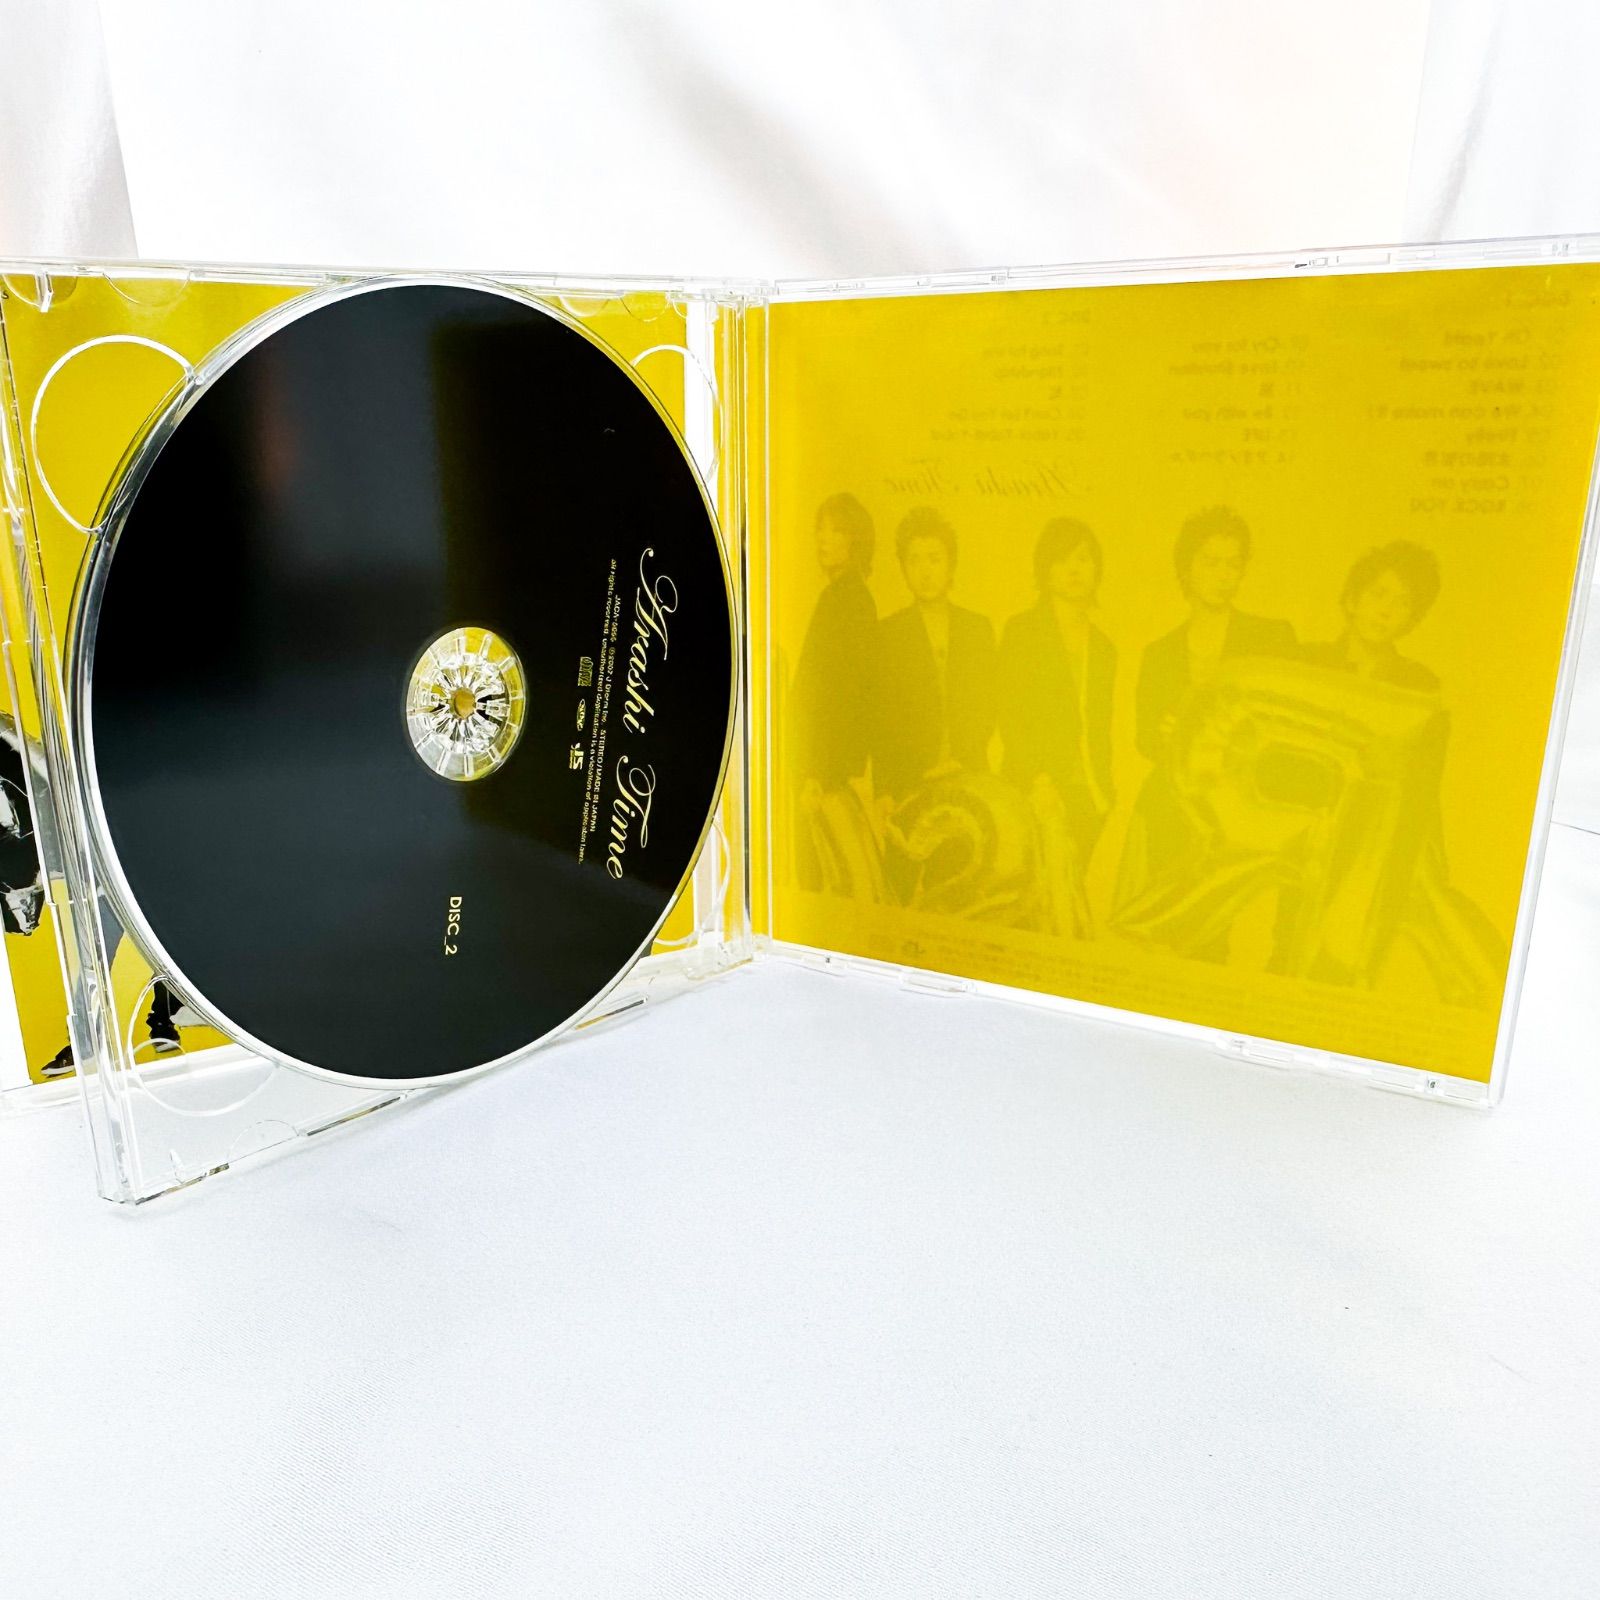 嵐 Time 初回限定盤 CD (2枚組) (B) - メルカリ